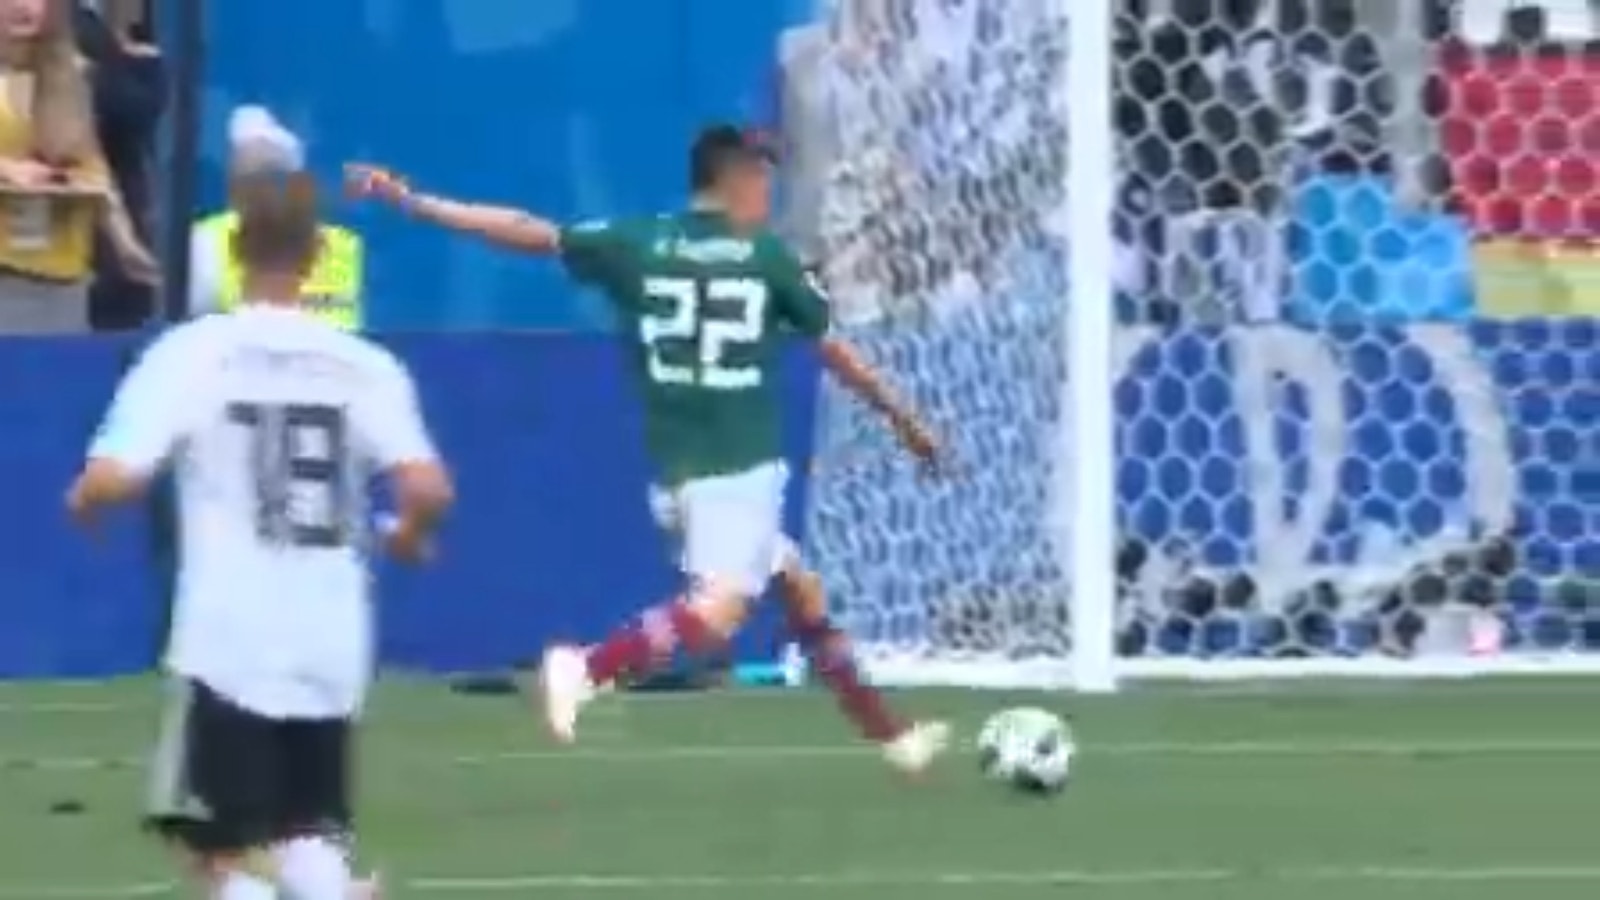 Mexico upsets Germany